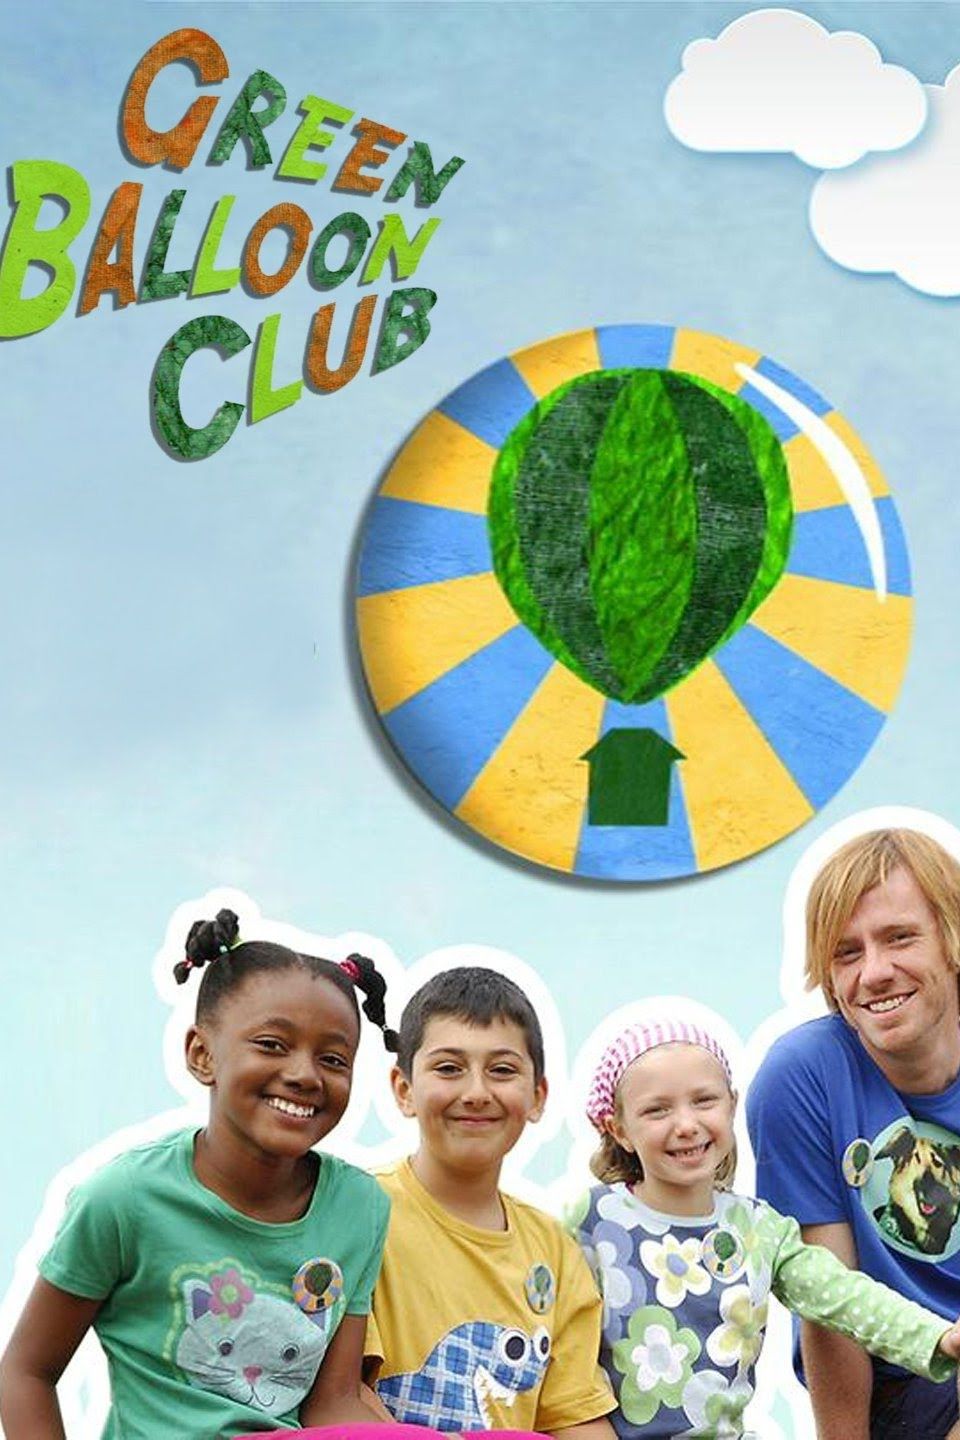 Green Balloon Club ne zaman